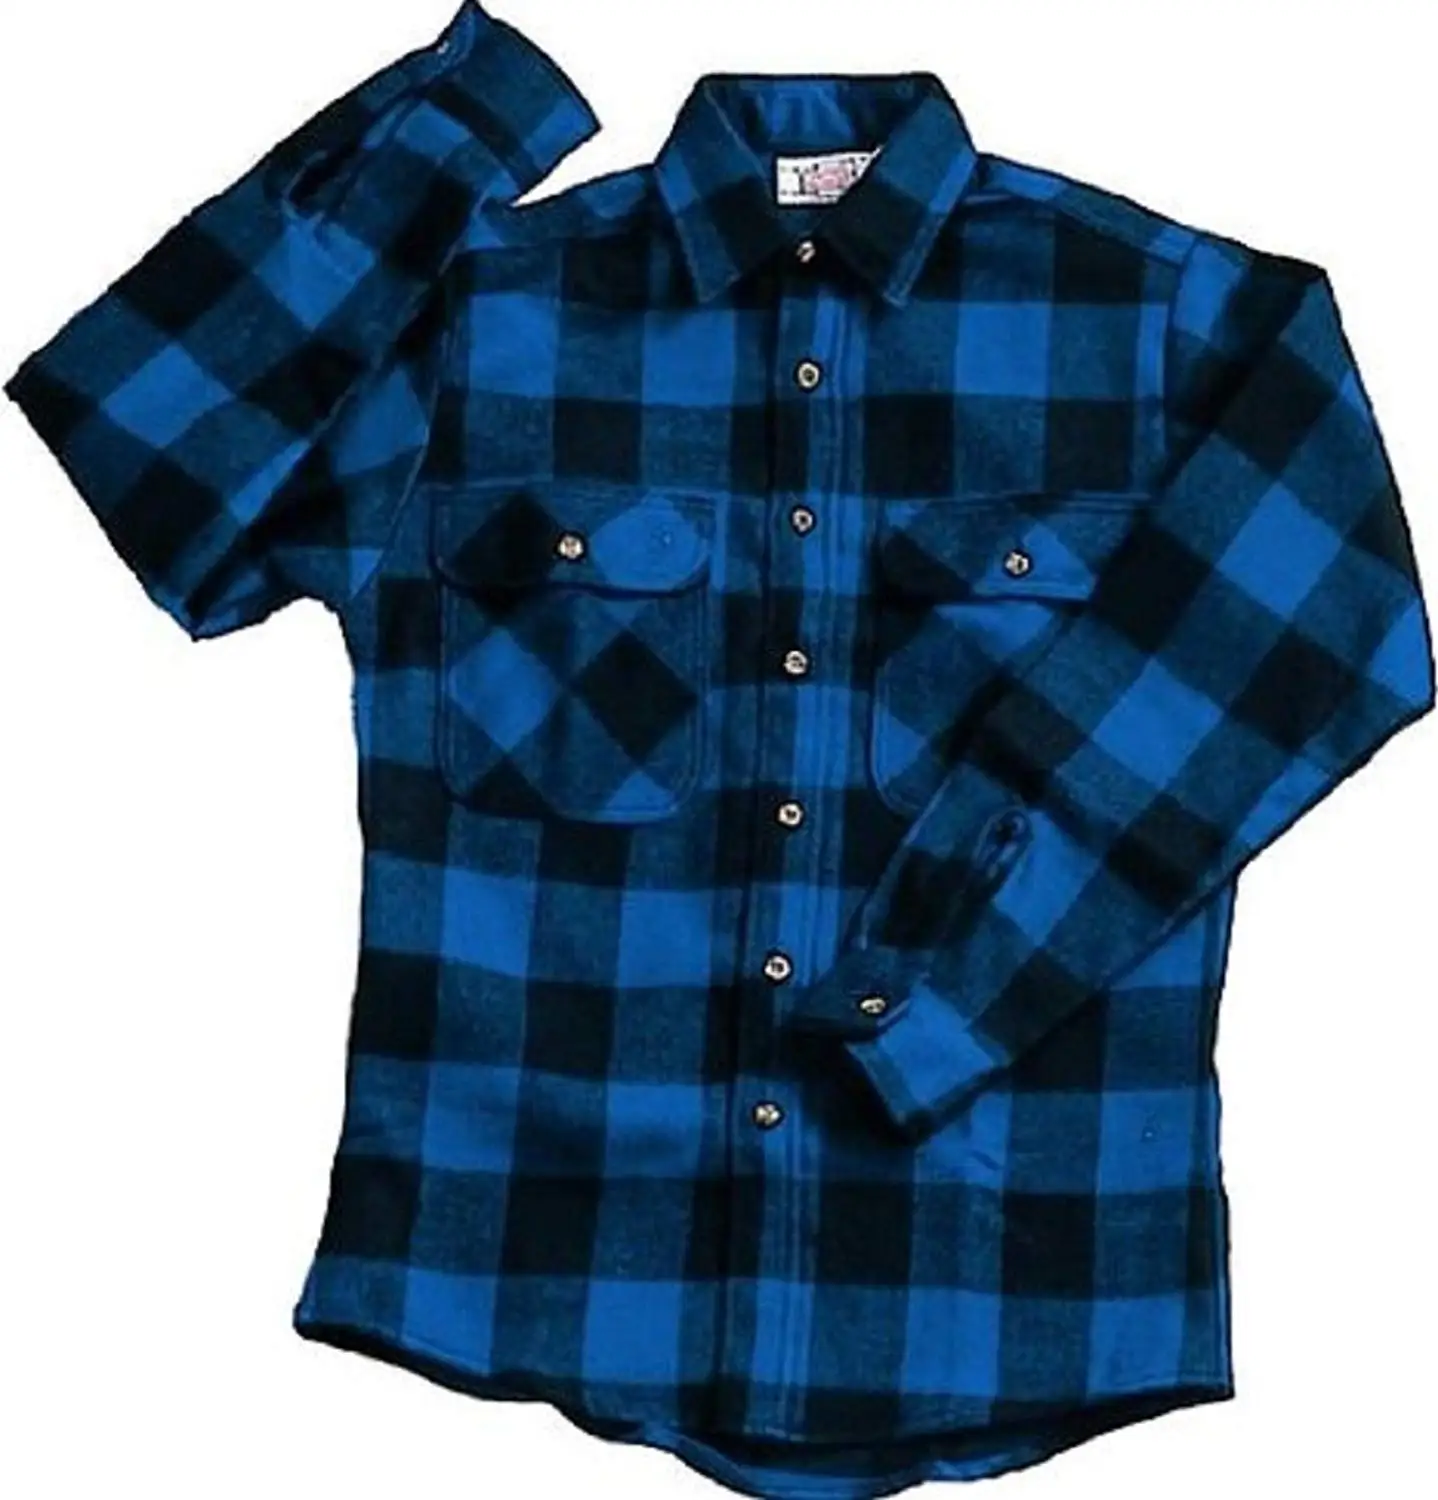 Extra heavyweight brawny flannel shirt - blue/black xlarge.